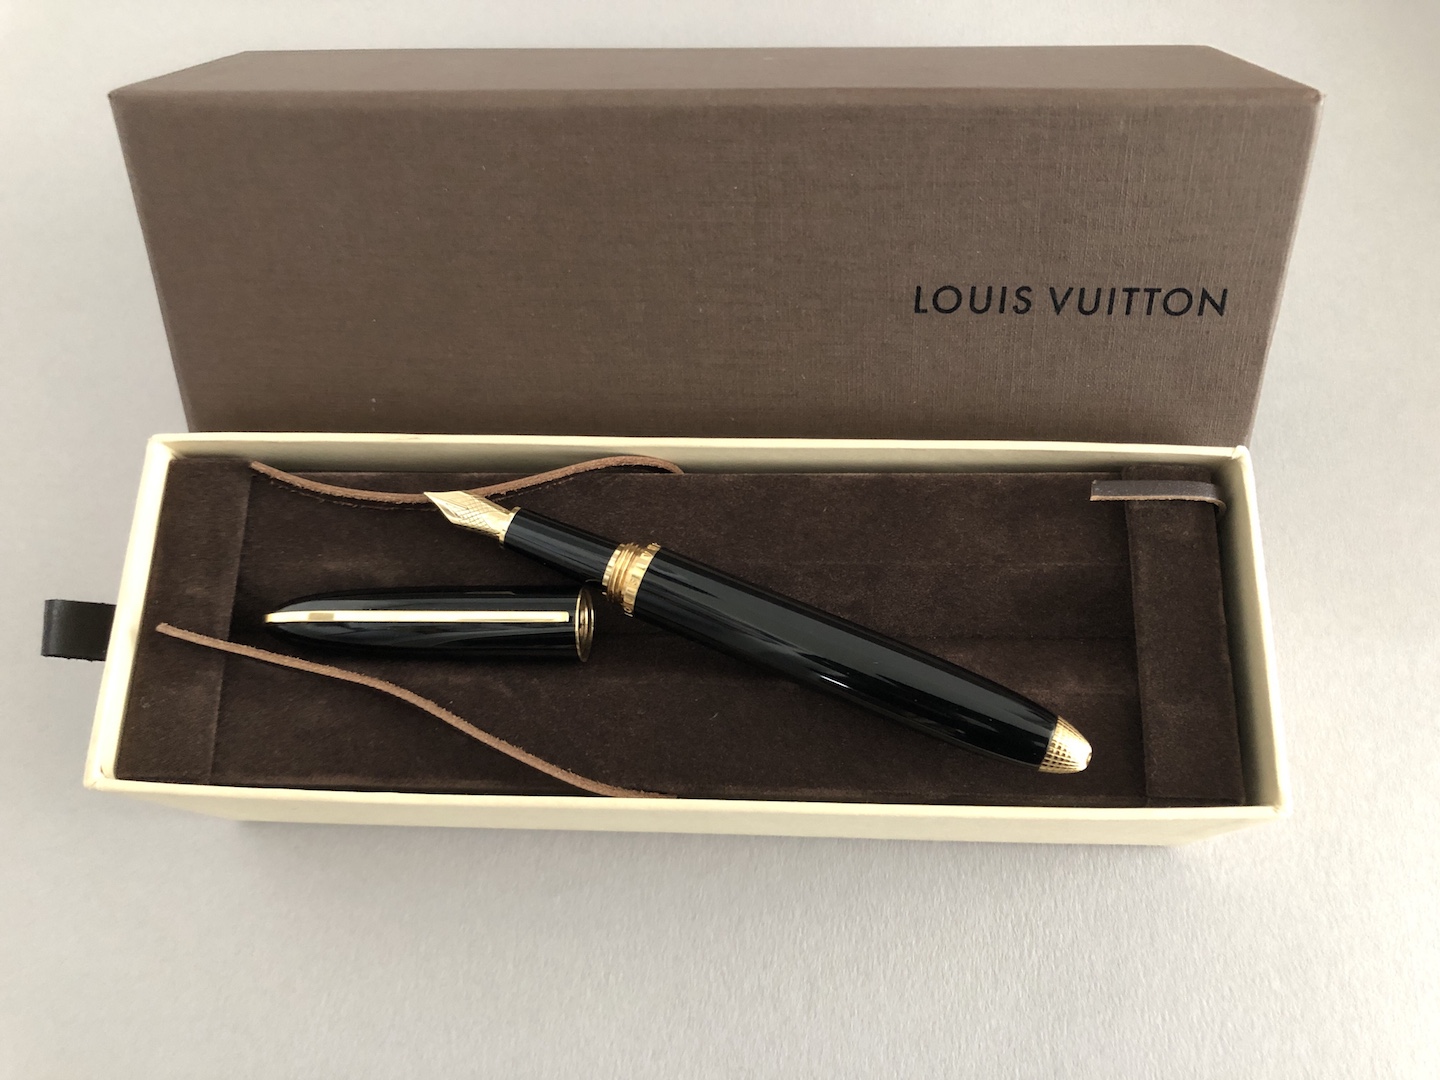 LOUIS VUITTON - Fountain pen - LUXURY fountain pen 18 kts DOC